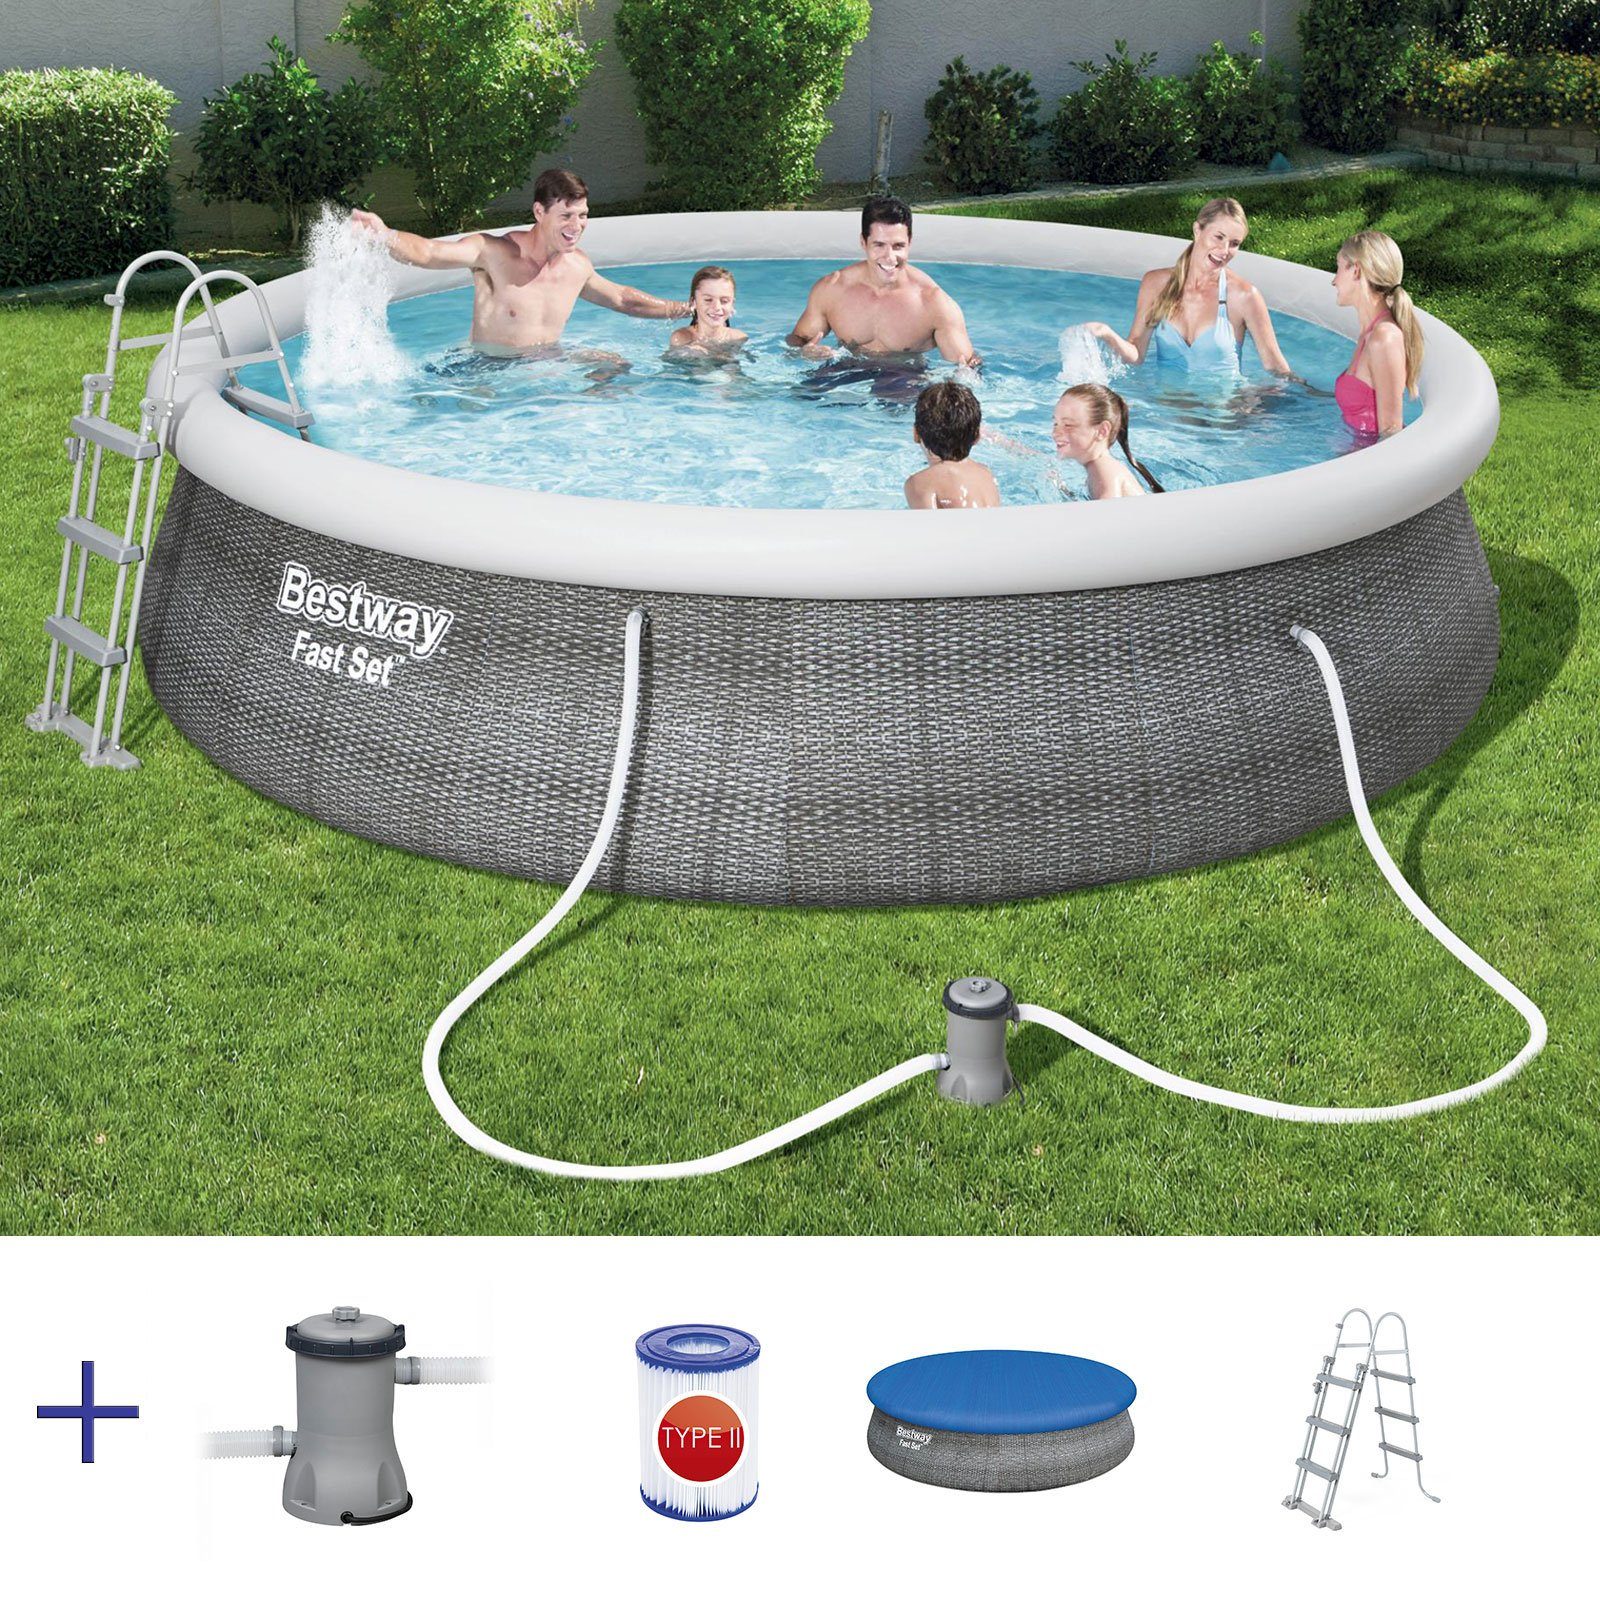 BESTWAY Pool »BESTWAY 57372 Fast Set Swimmingpool Rund Rattan Look Filter  Leiter Cover 457x107cm« online kaufen | OTTO